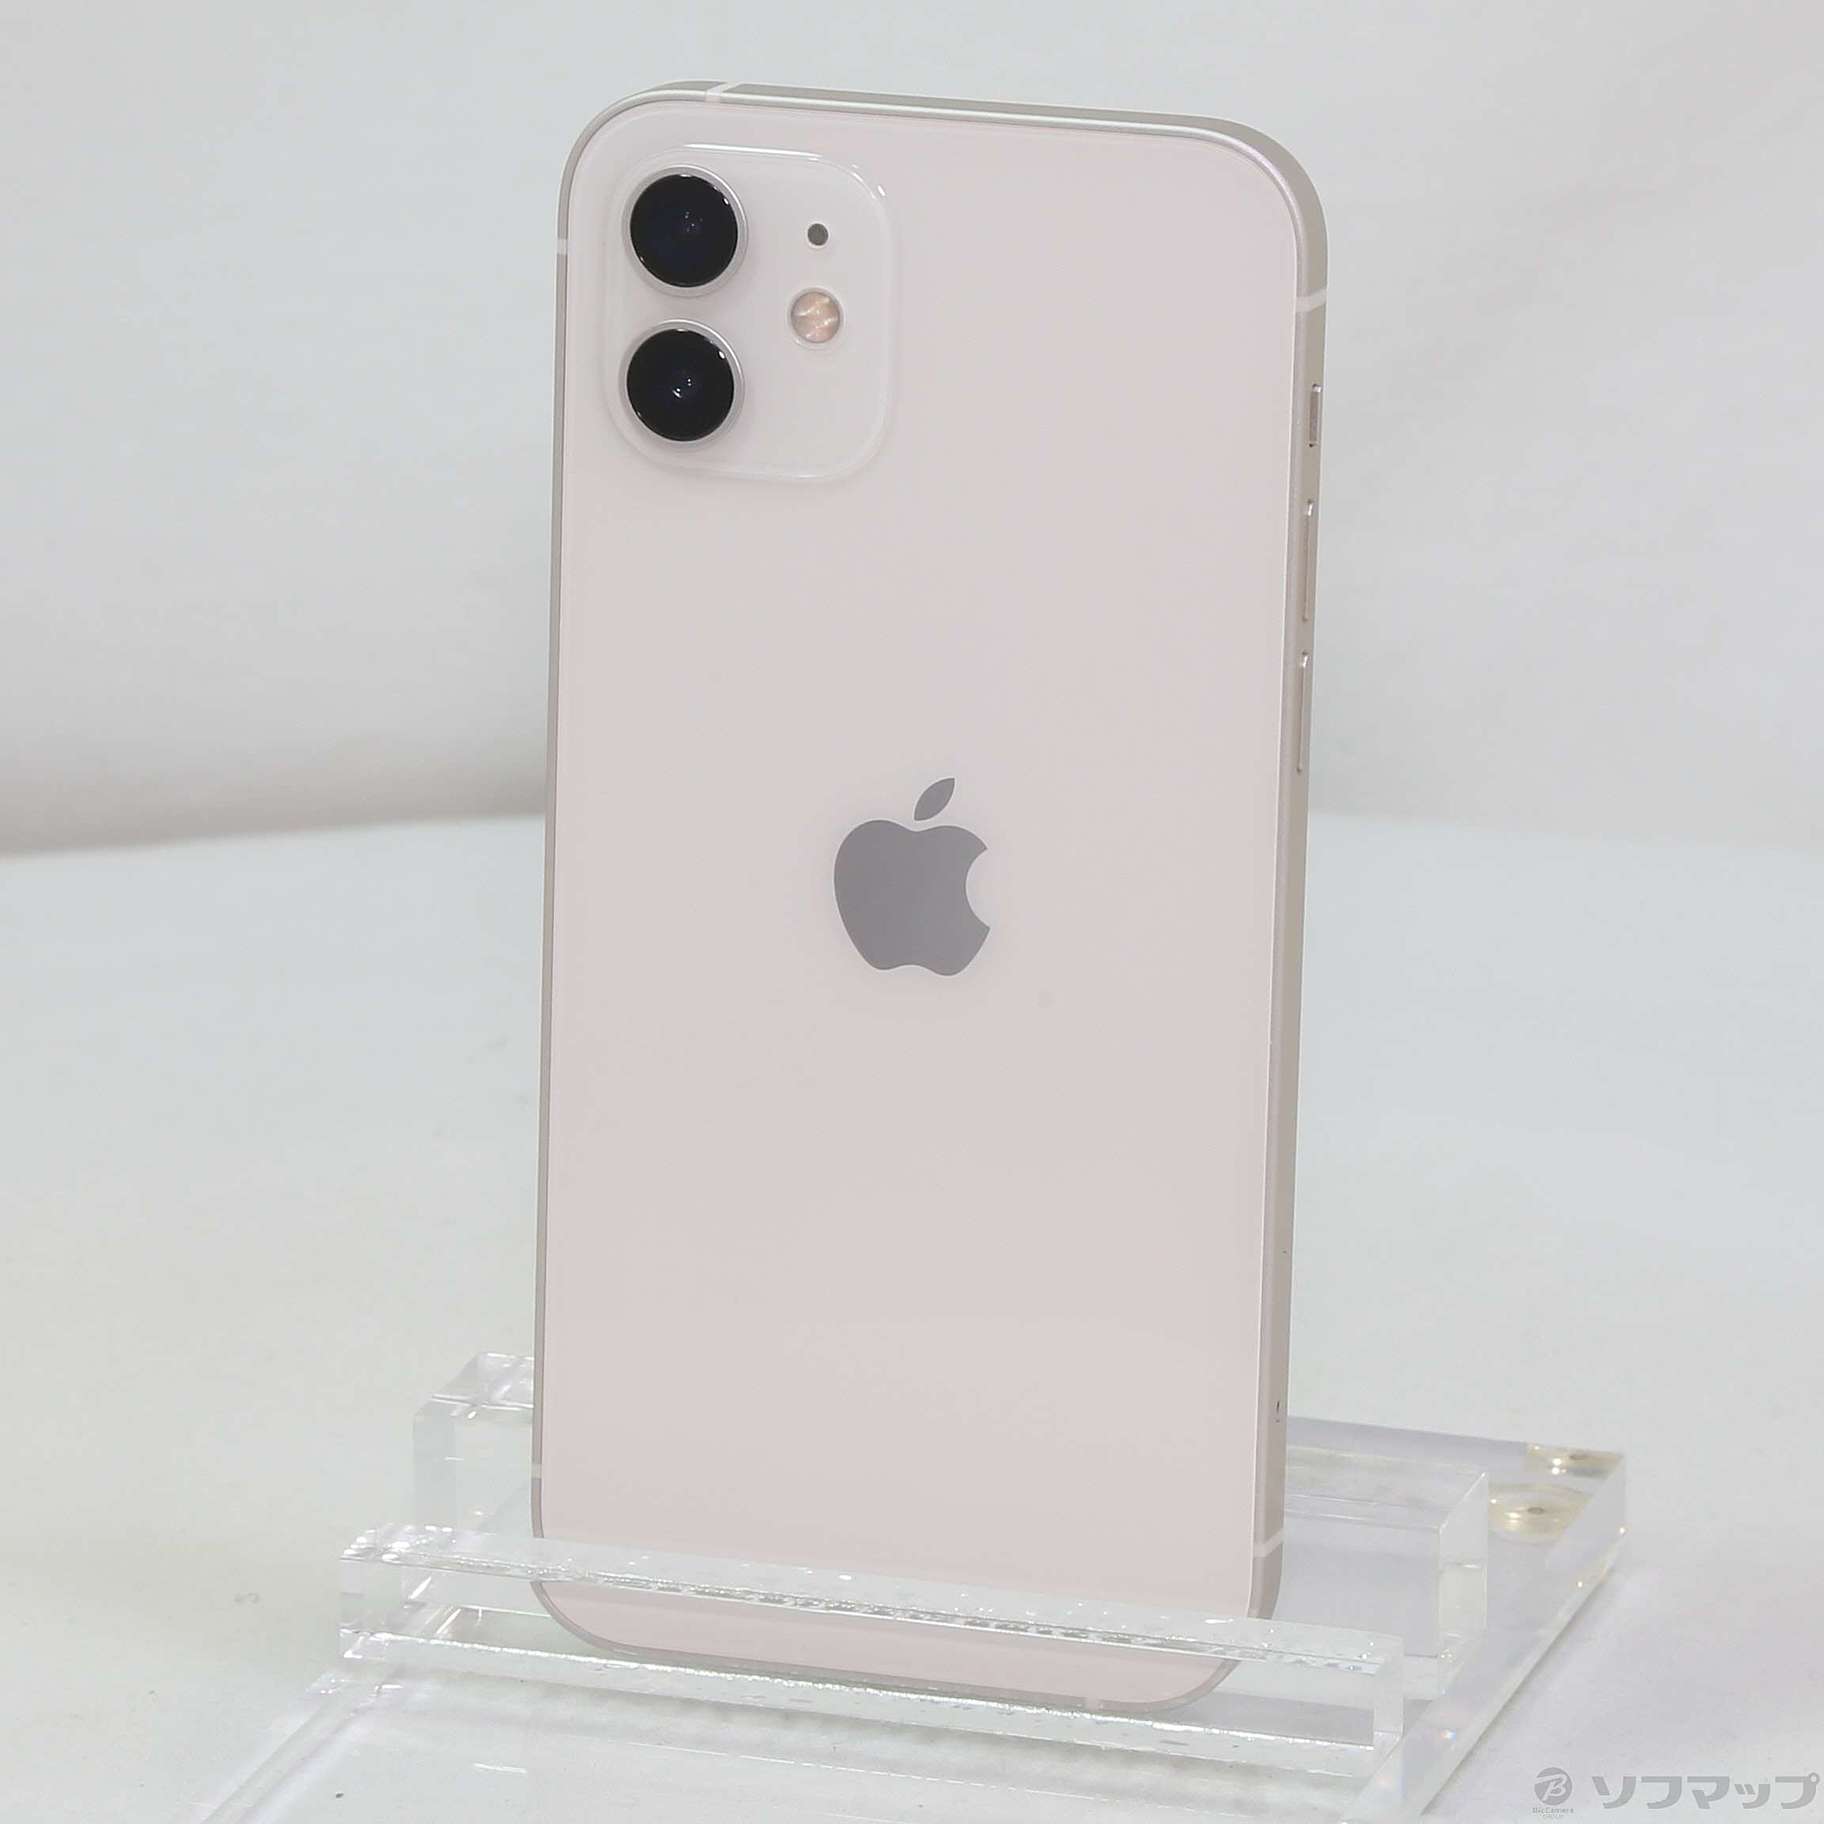 【付属品あり】iPhone 11 ホワイト 64 GB SIMフリージャンク品